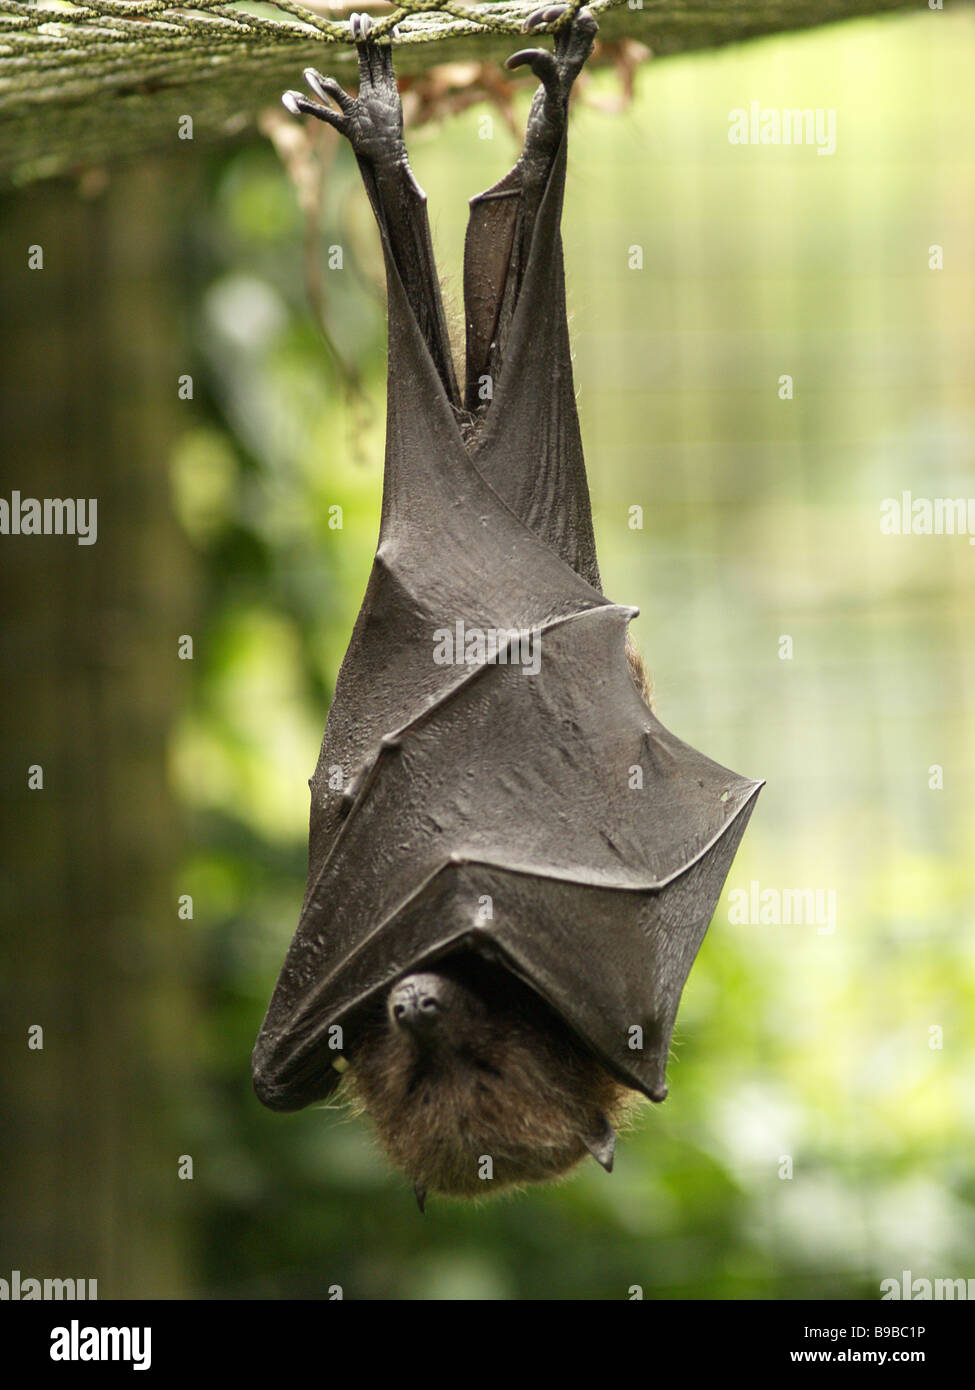 Captive Fruit Bat Asleep Stock Photo